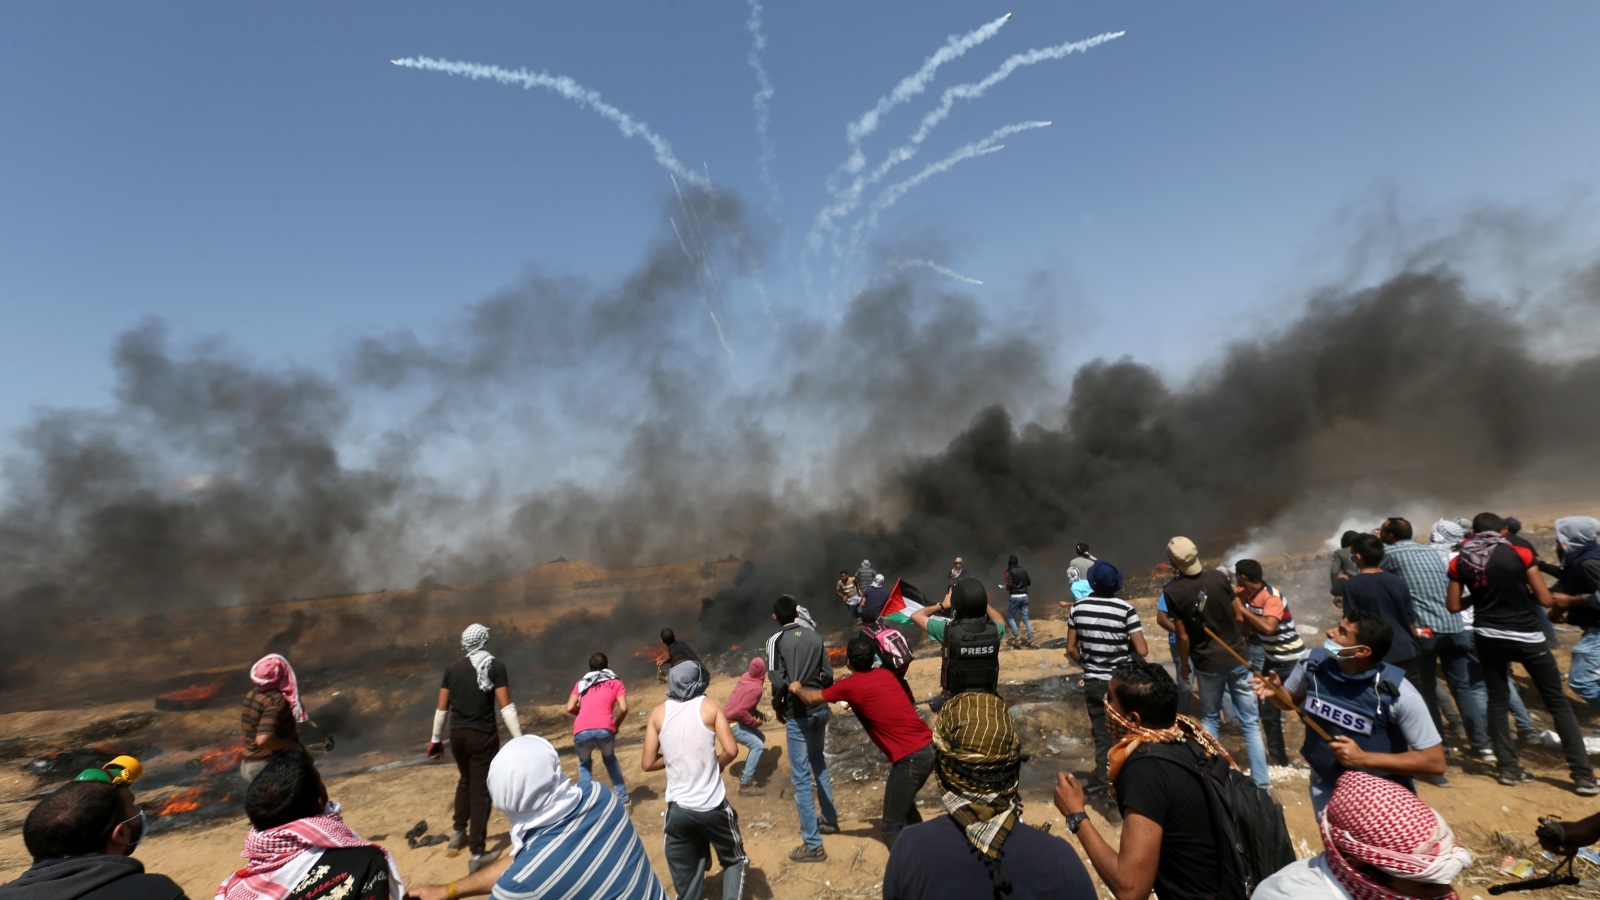 جانب من الاحتجاجات التي شهدتها غزة قرب السياج الحدودي يوم الجمعة الماضي (رويترز)